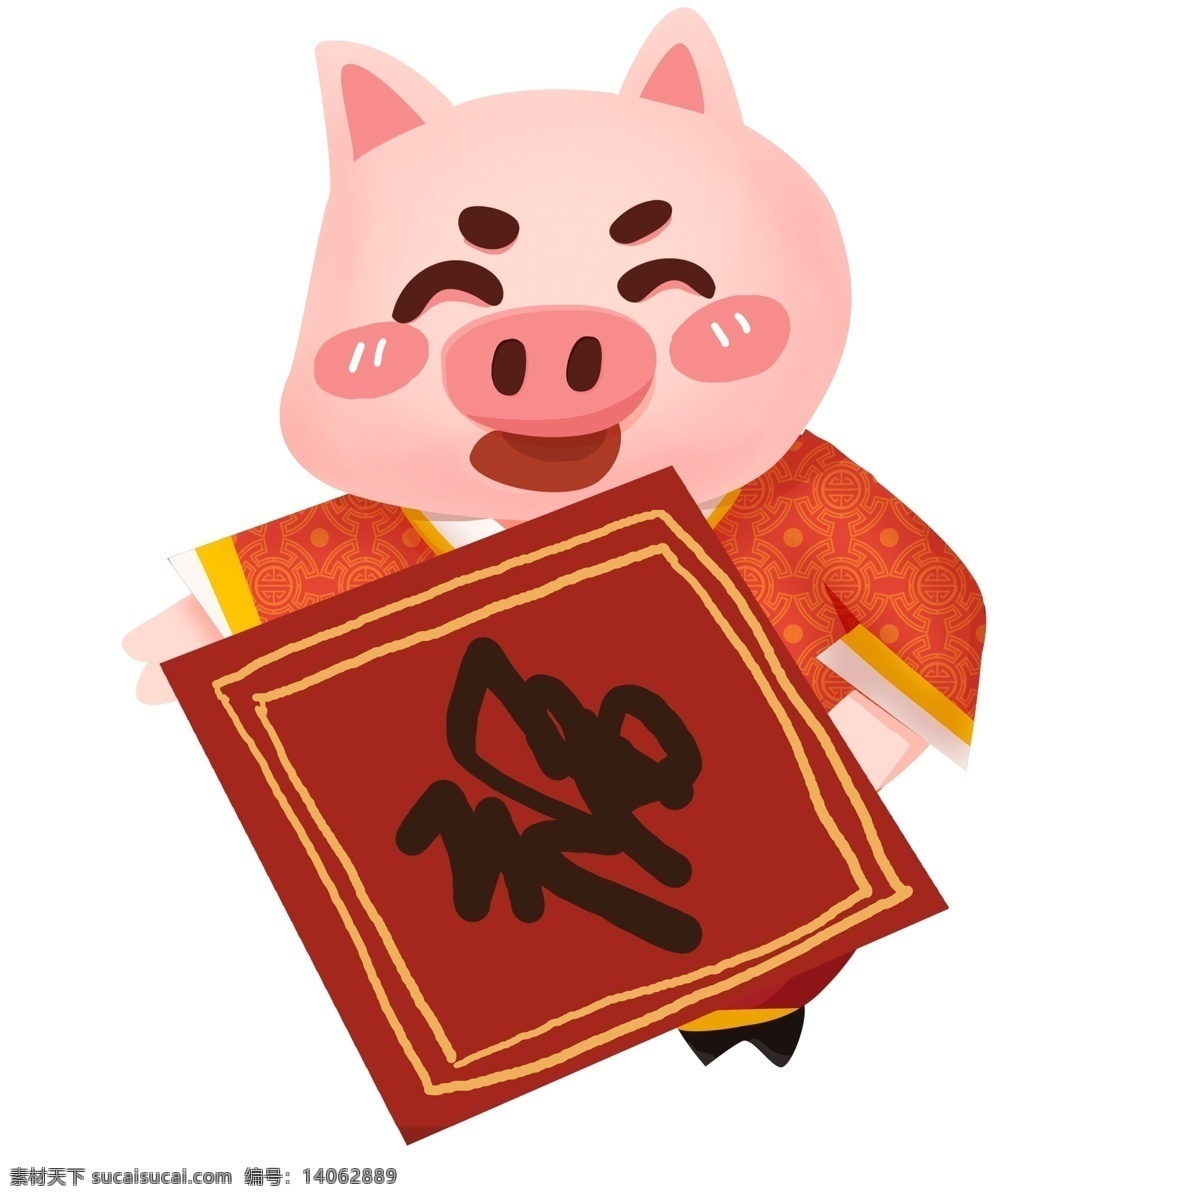 春节 贴 福字 的卡 通 小 猪 卡通 彩色 喜庆 插画 彩绘 贴福字 新年 猪年 2019年 过年 小猪形象 猪年形象